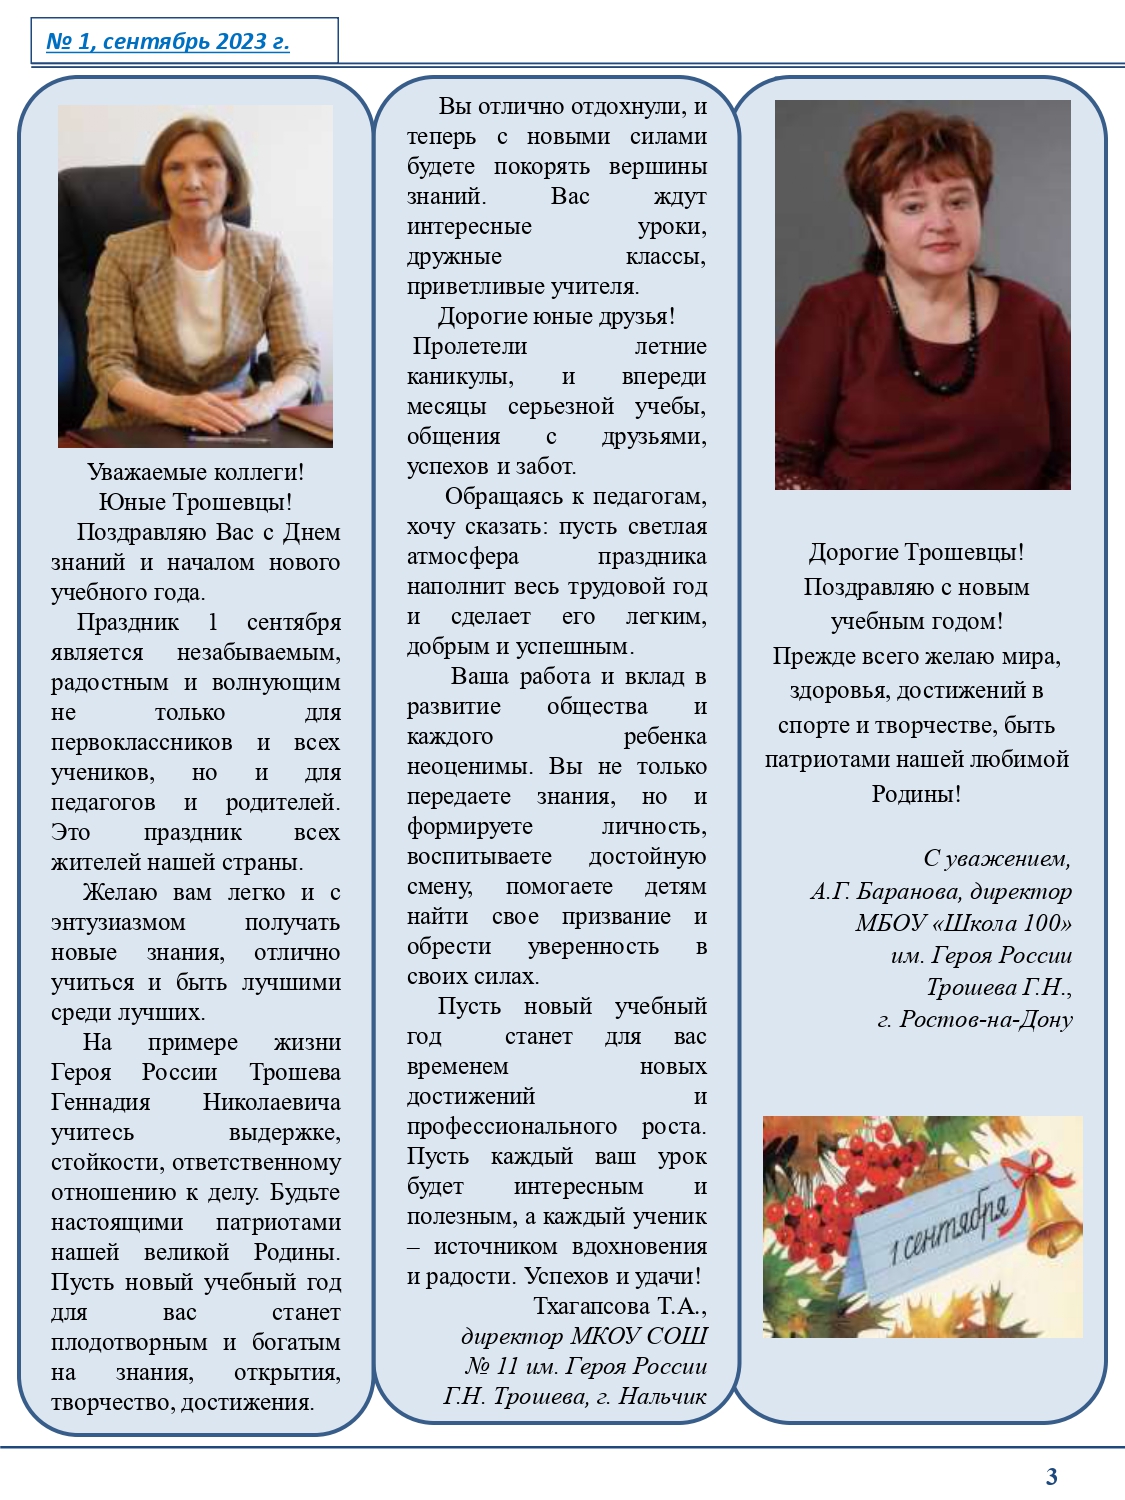 Первый номер газеты "Юные Трошевцы"